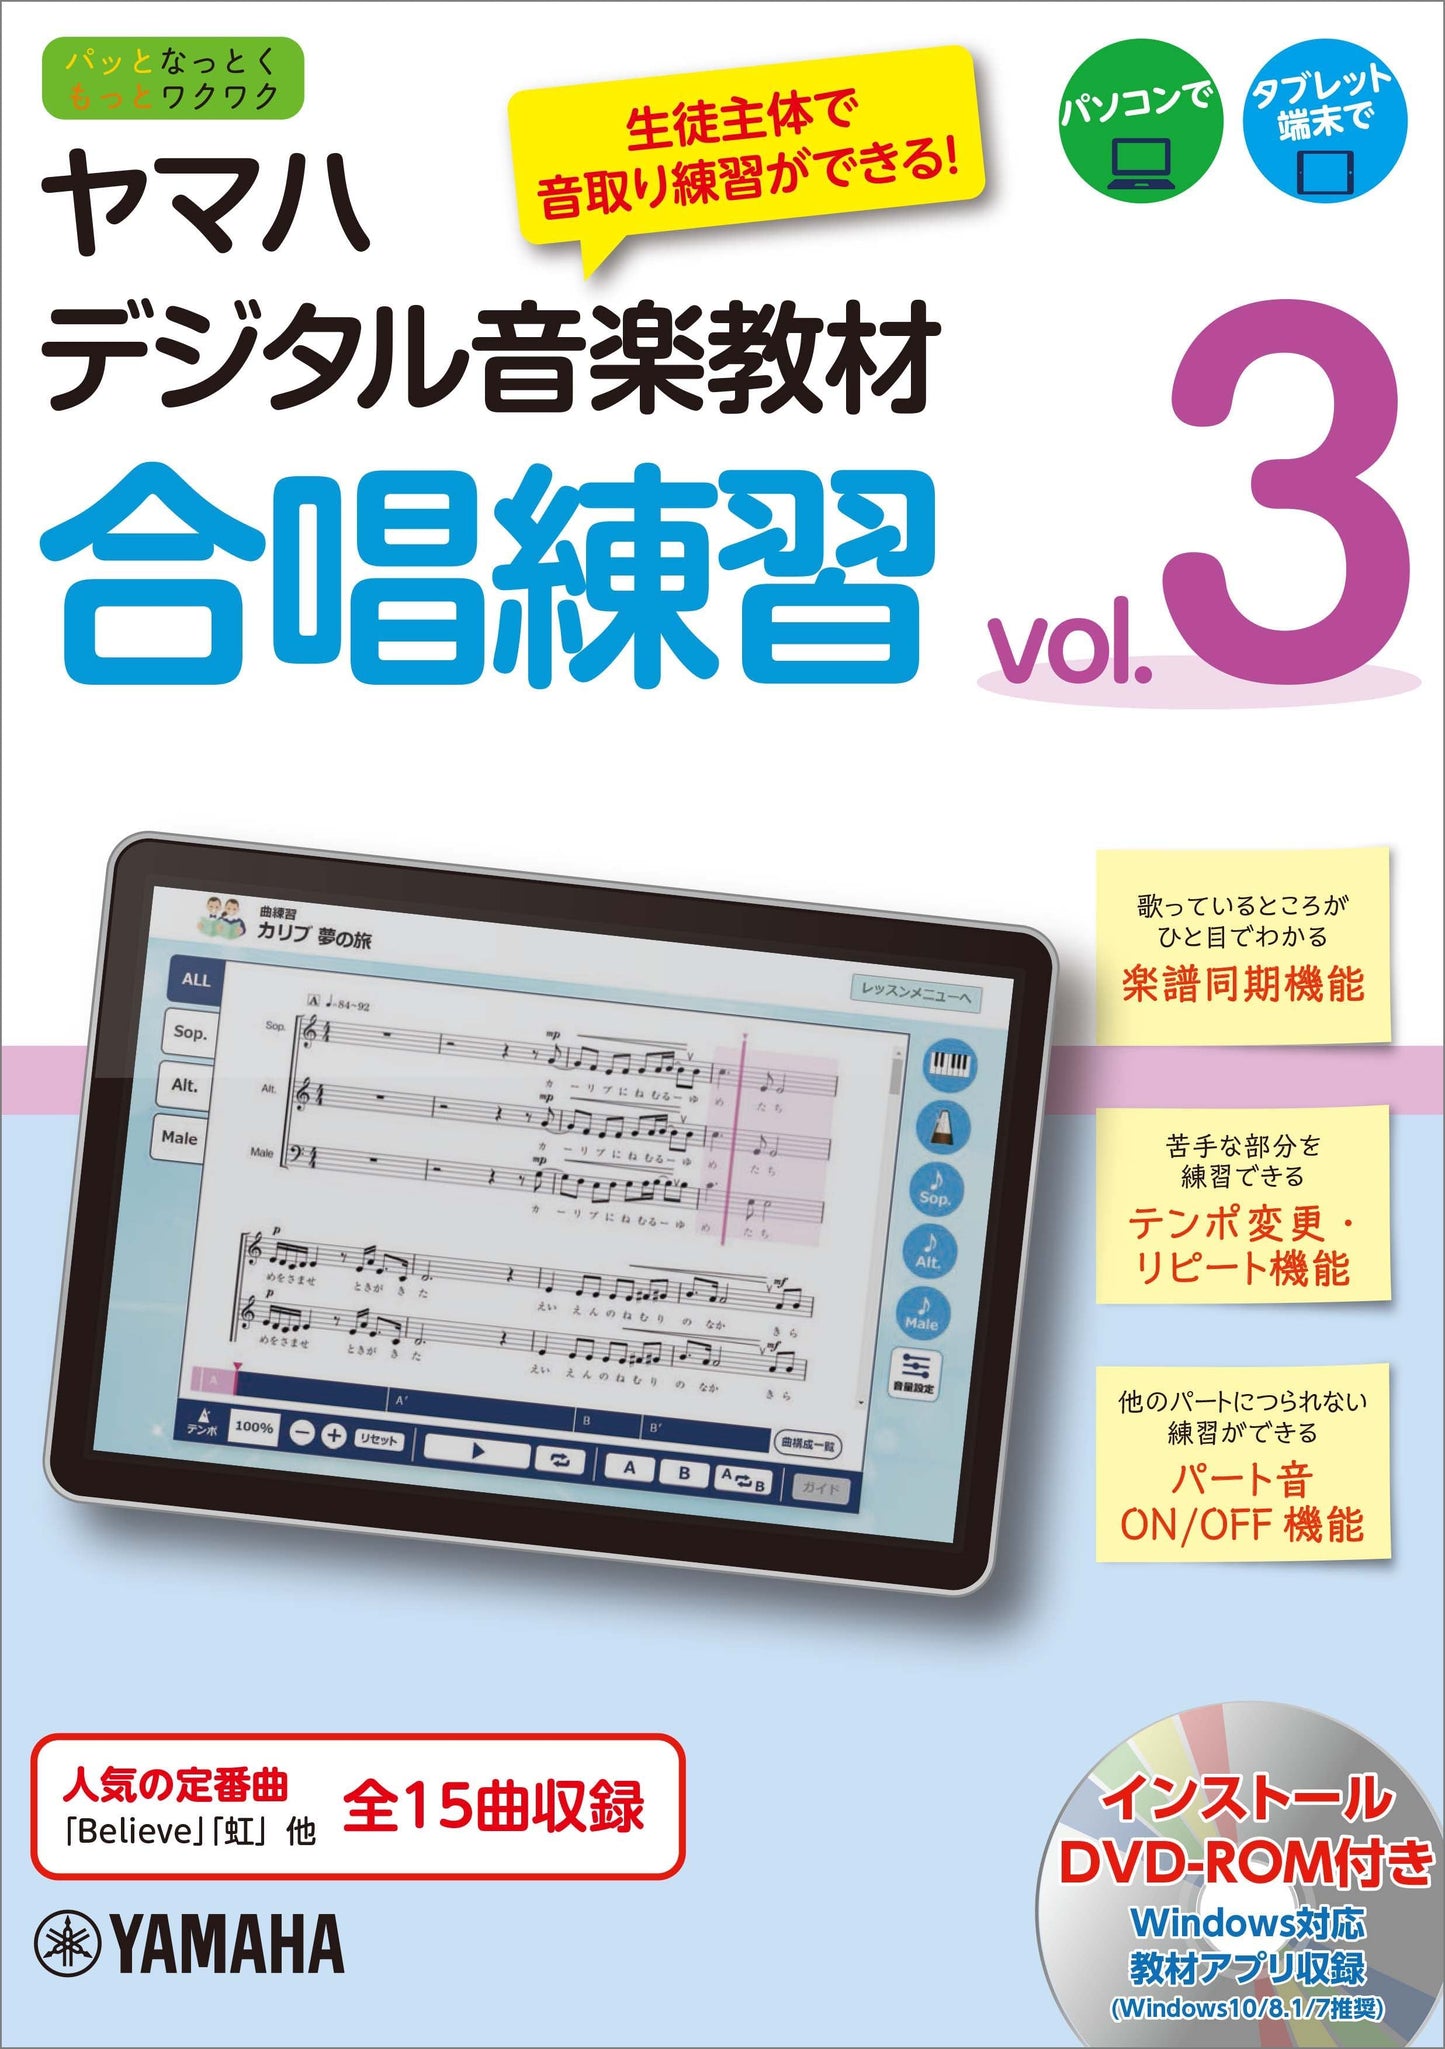 ヤマハデジタル音楽教材 合唱練習 vol.3